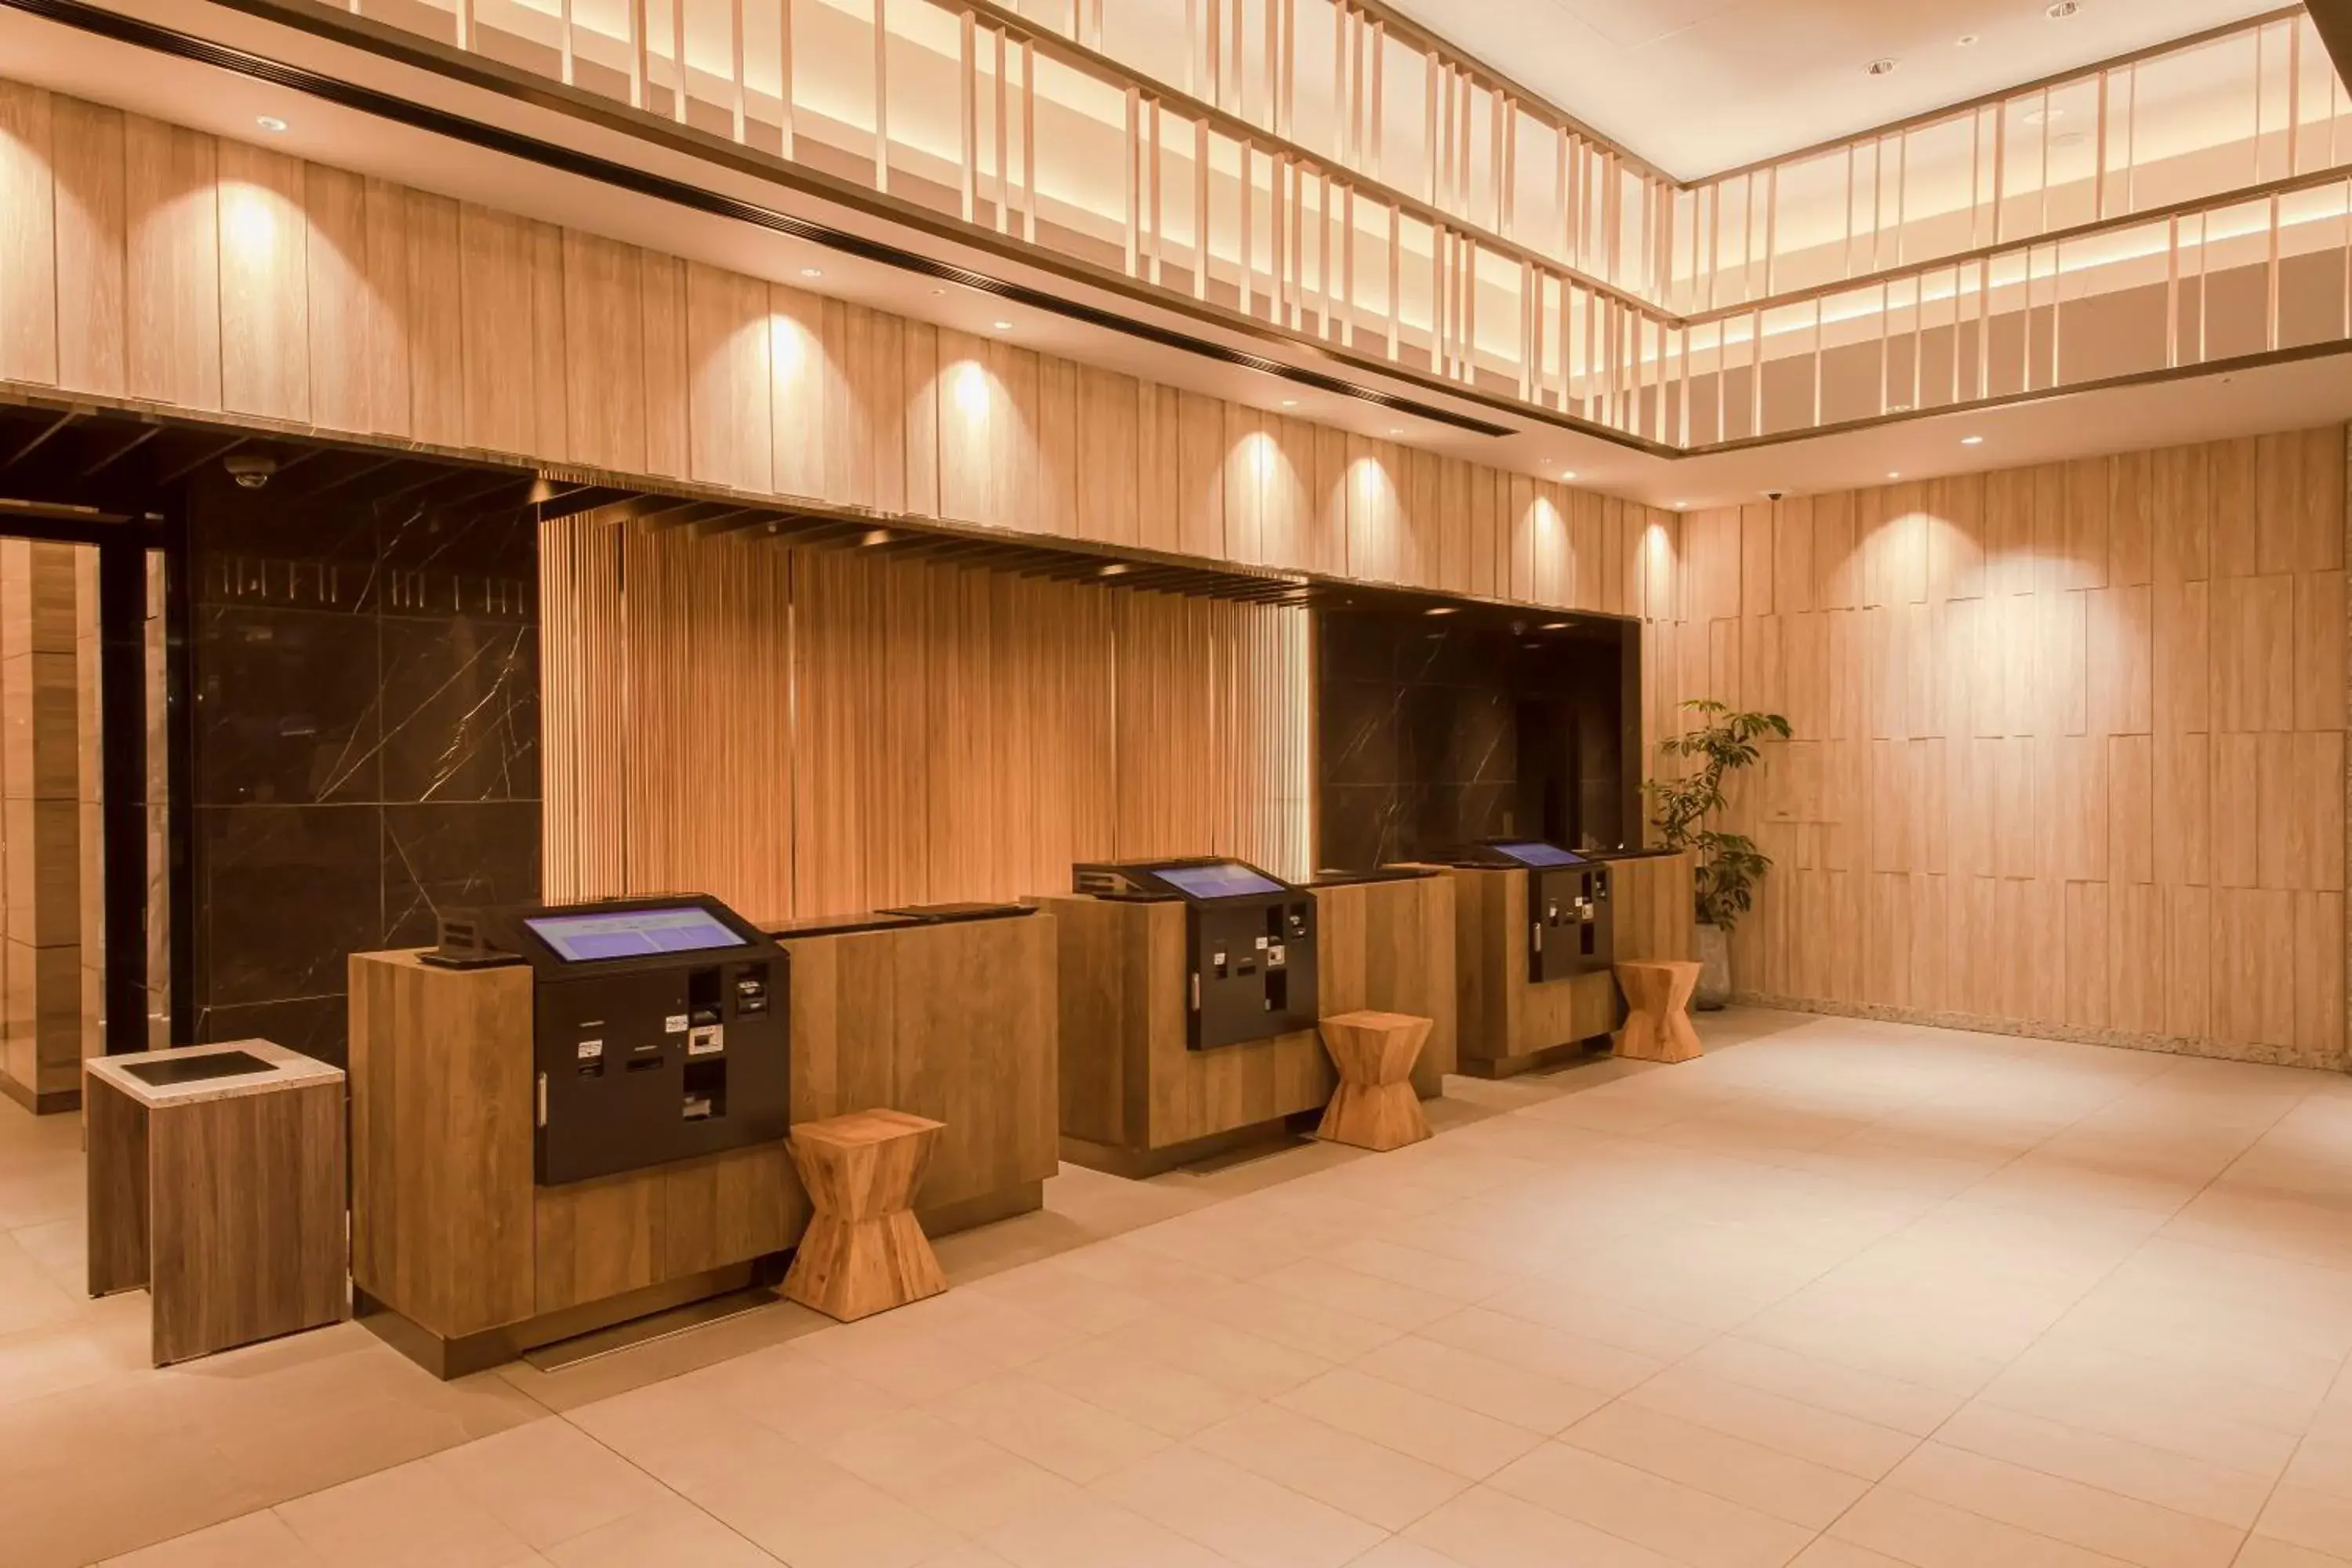 Lobby or reception in Hotel Keihan Nagoya